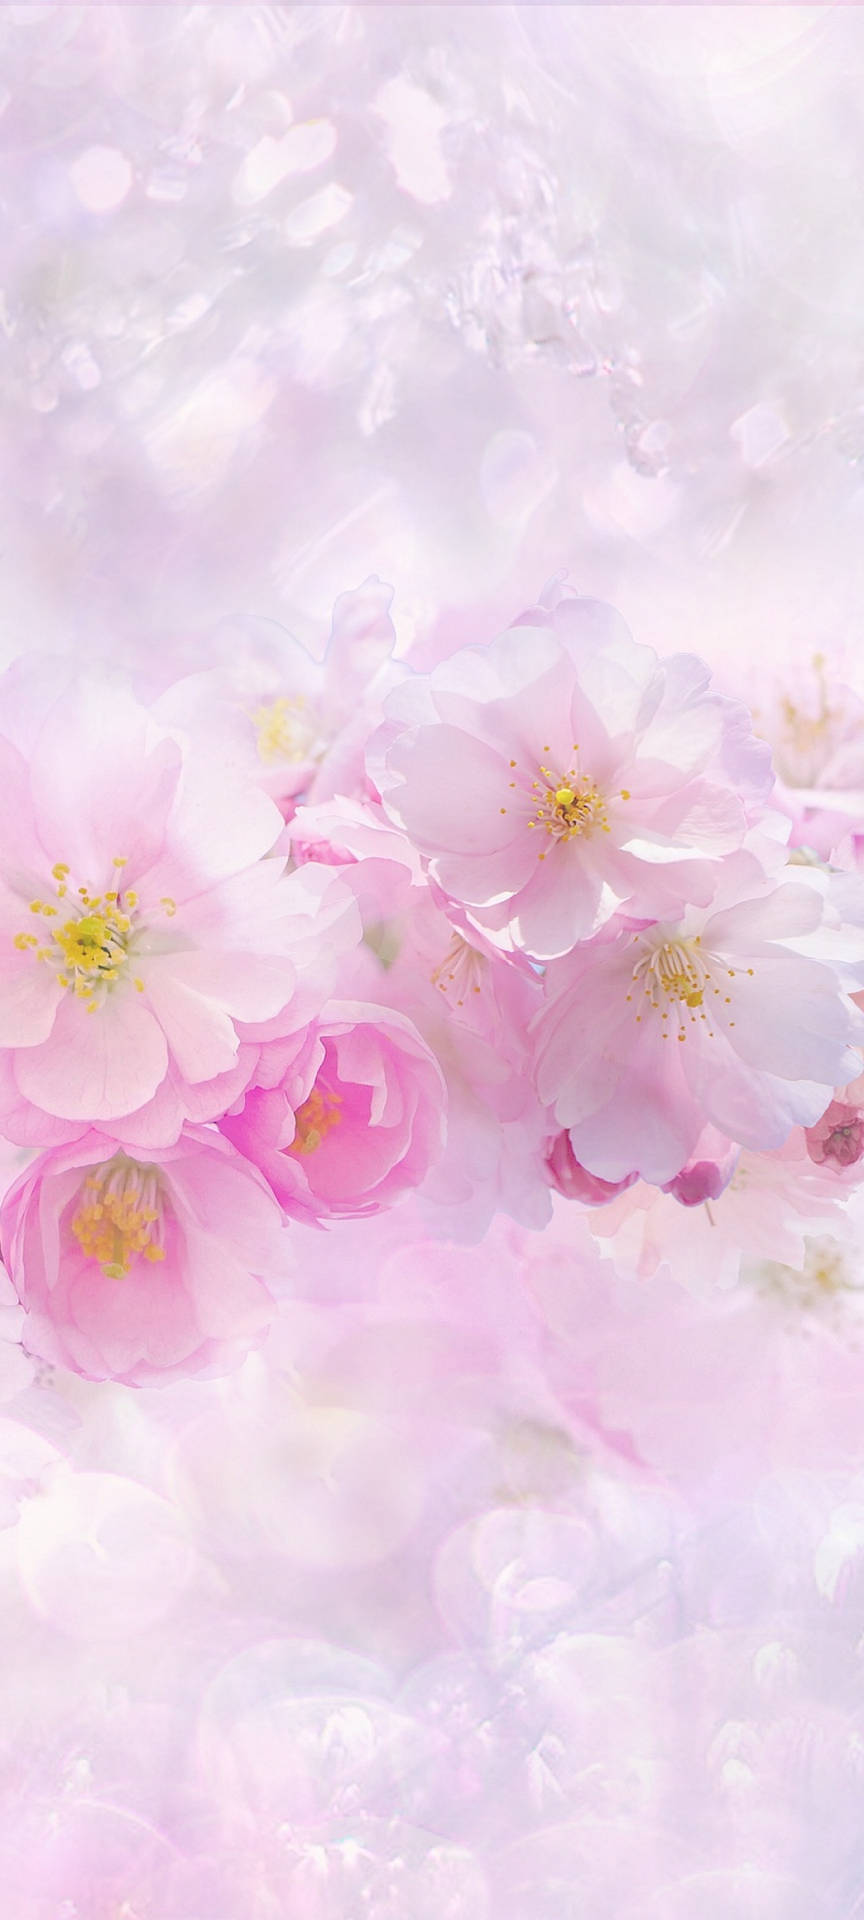 Beautiful Spring Pink And White Sakura Flowers Wallpaper